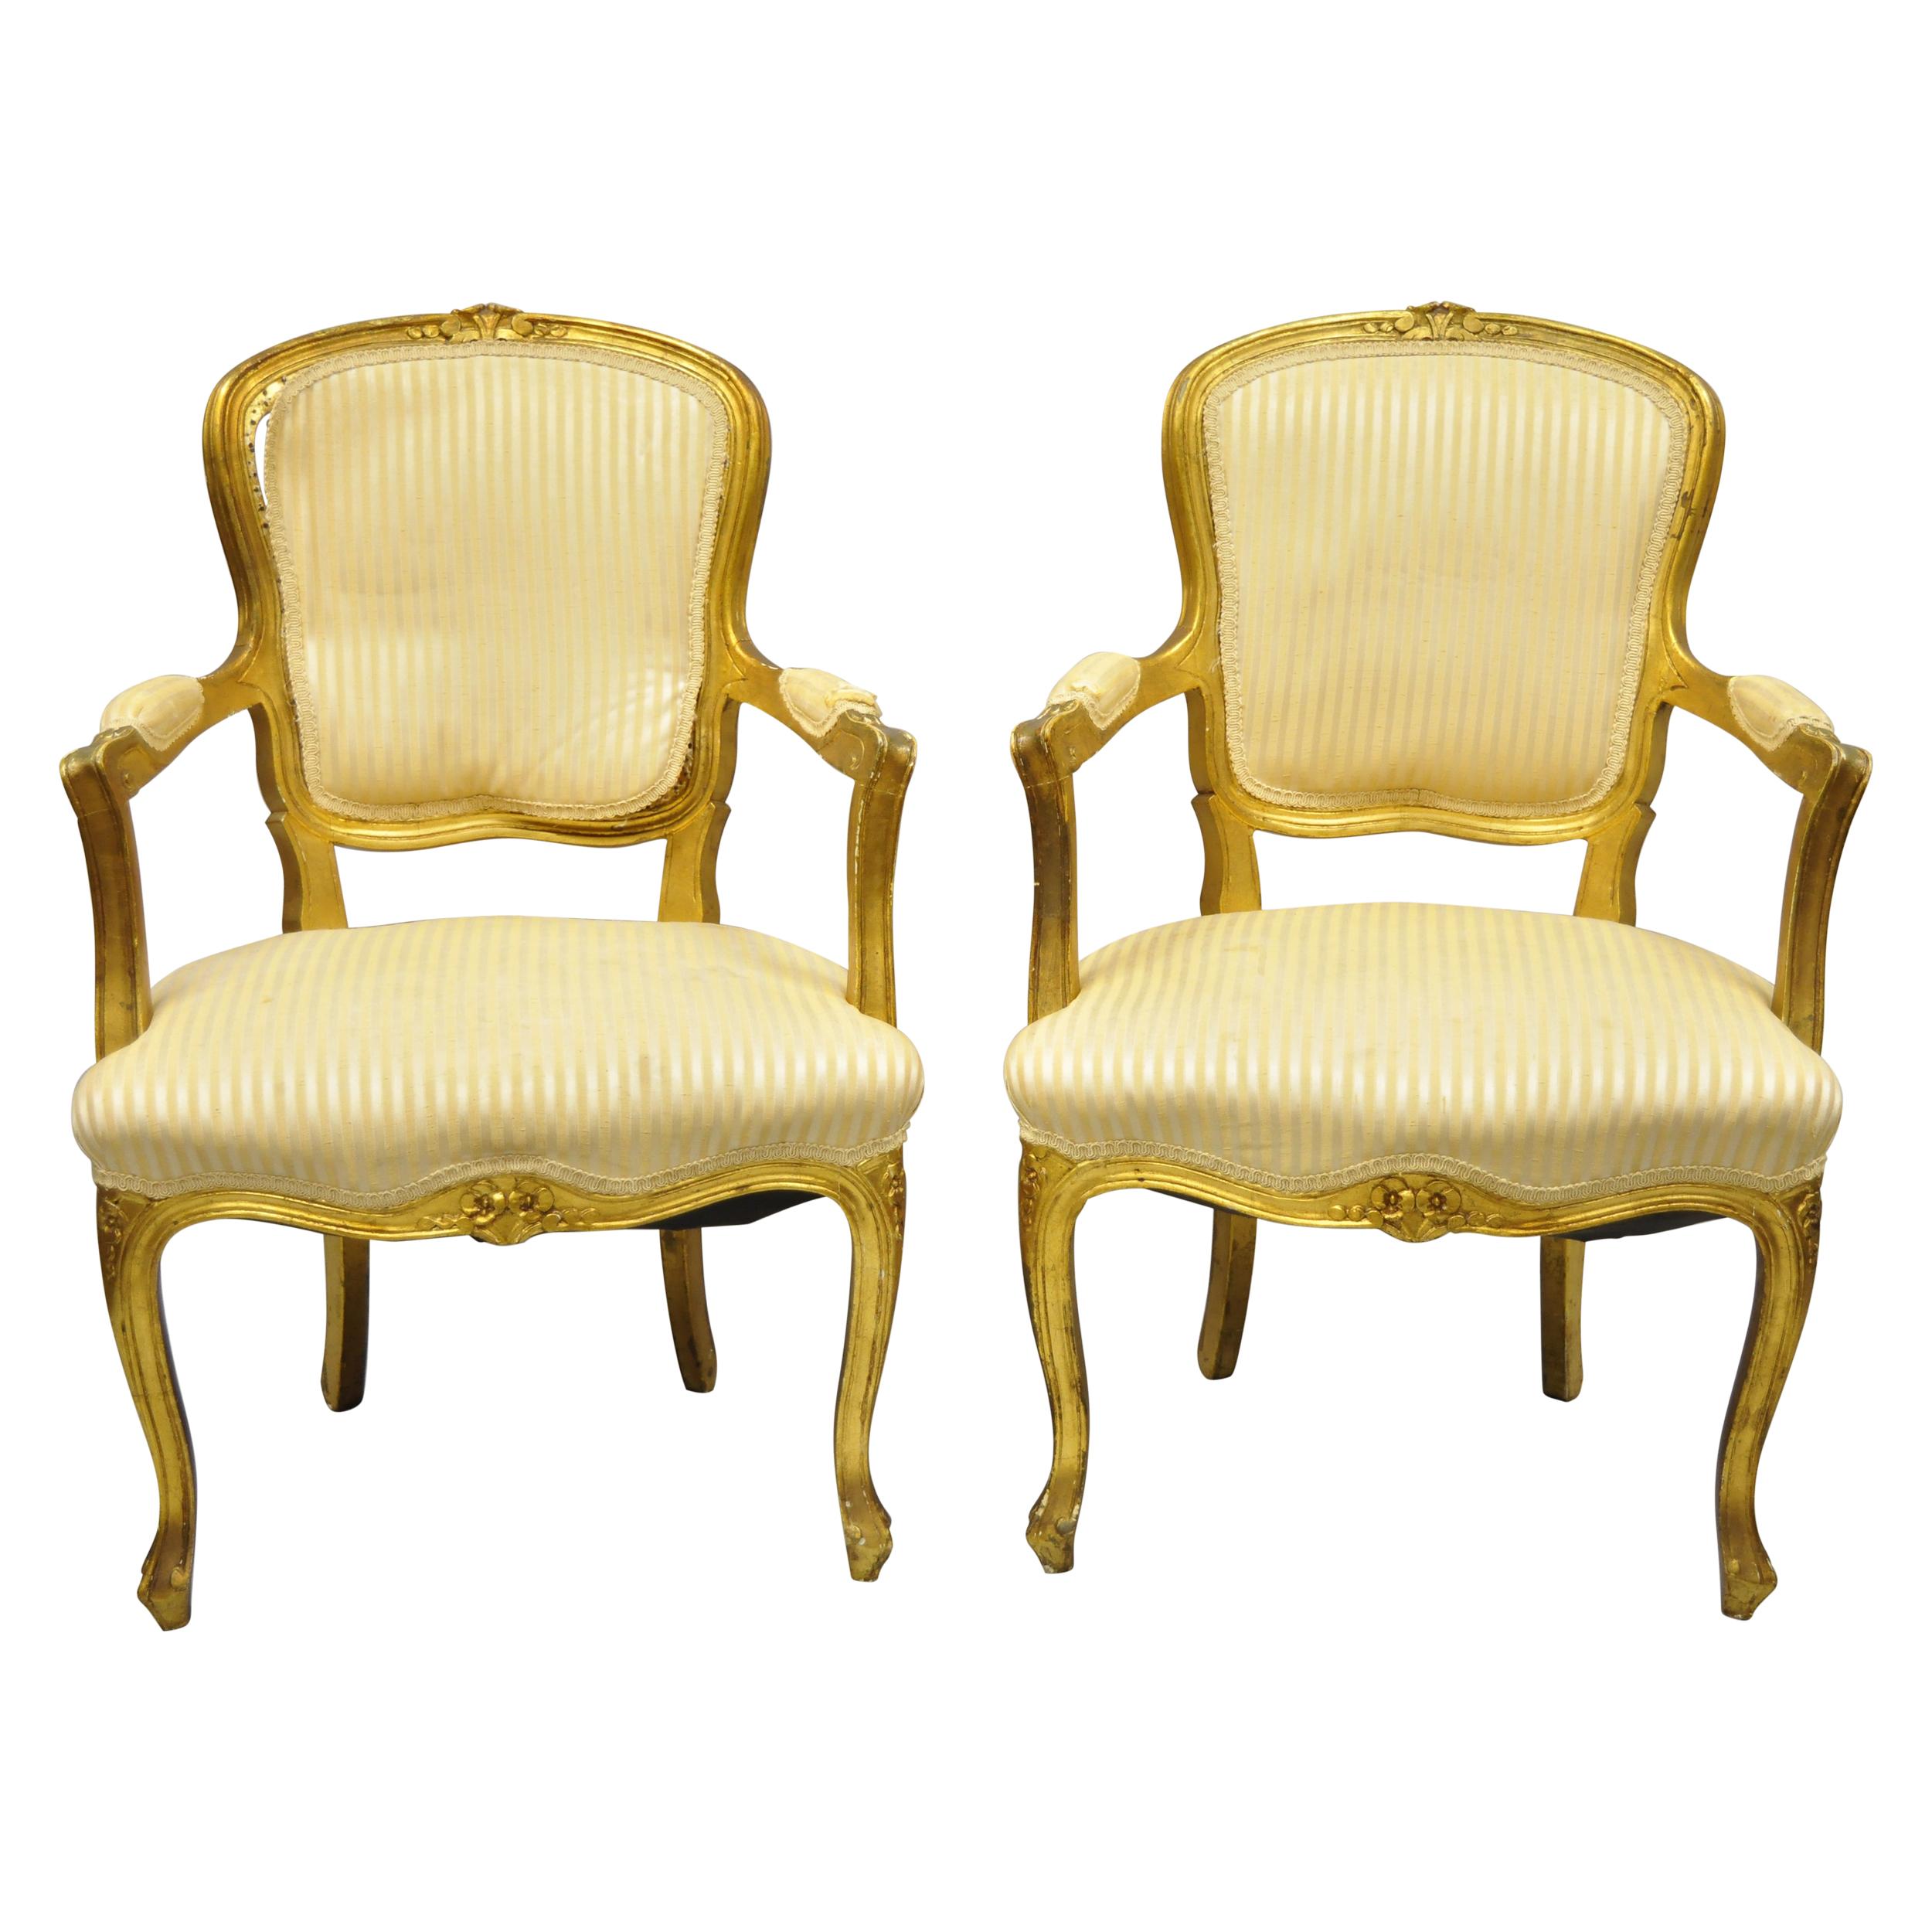 Paire de fauteuils de style Louis XV français en or doré à remettre à neuf, une pièce